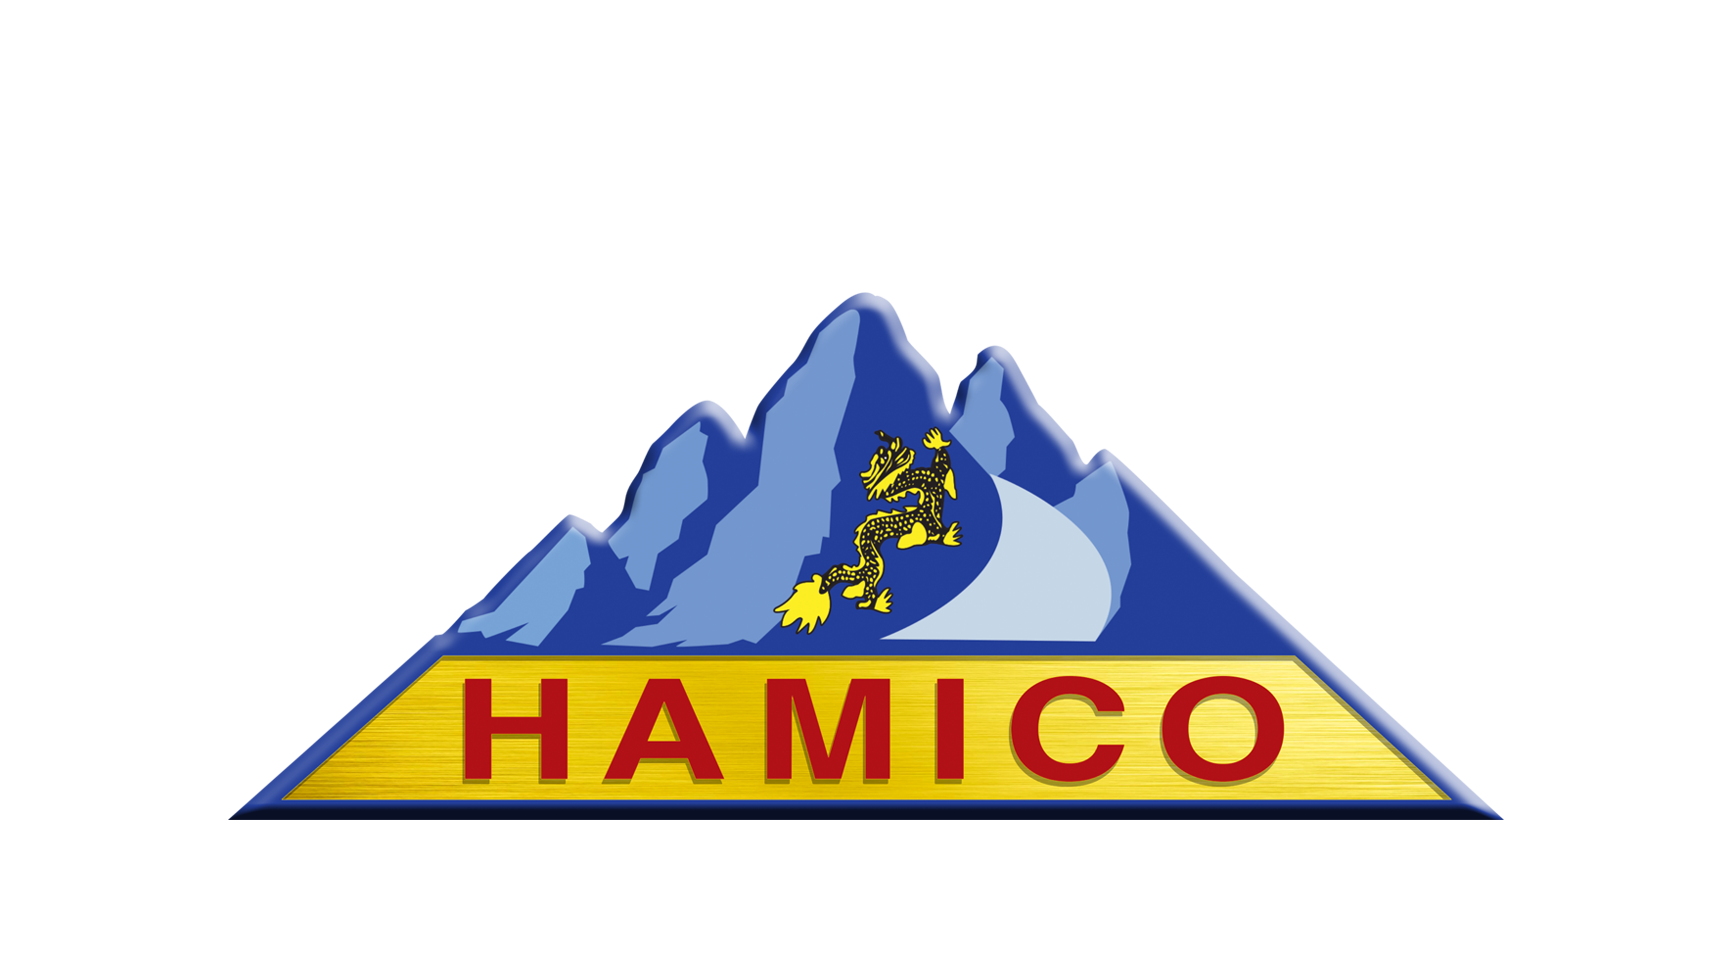 Hamico Refractory Company